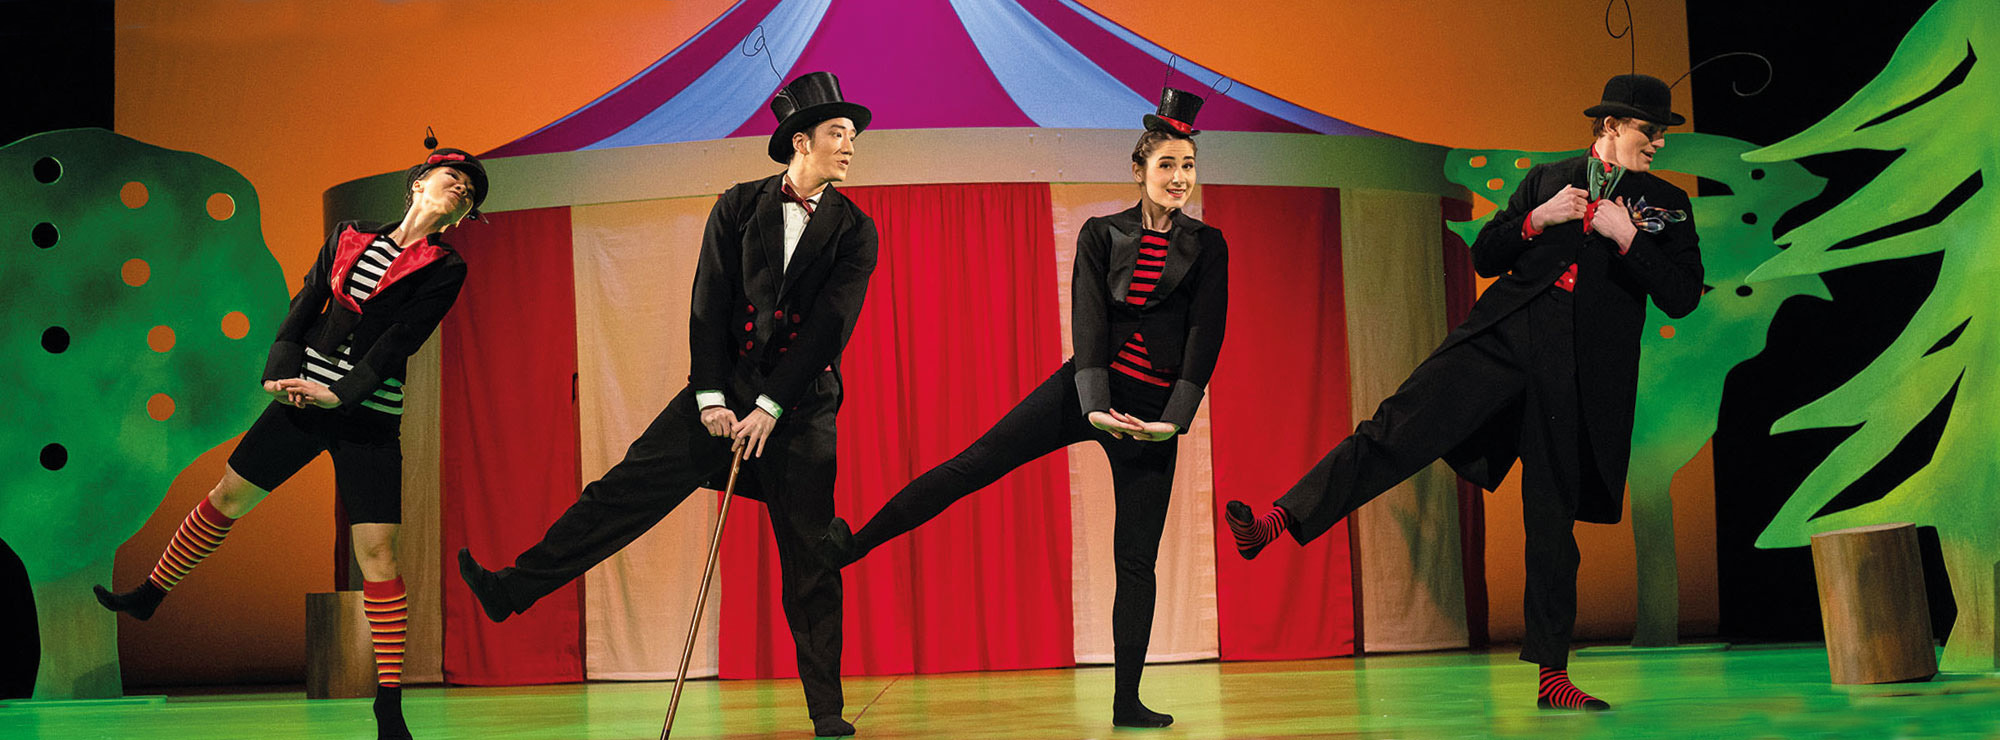 Szene aus DER KARNEVAL DER TIERE, vier Käfer tanzen vergnügt vor einer bunten Zirkuslandschaft